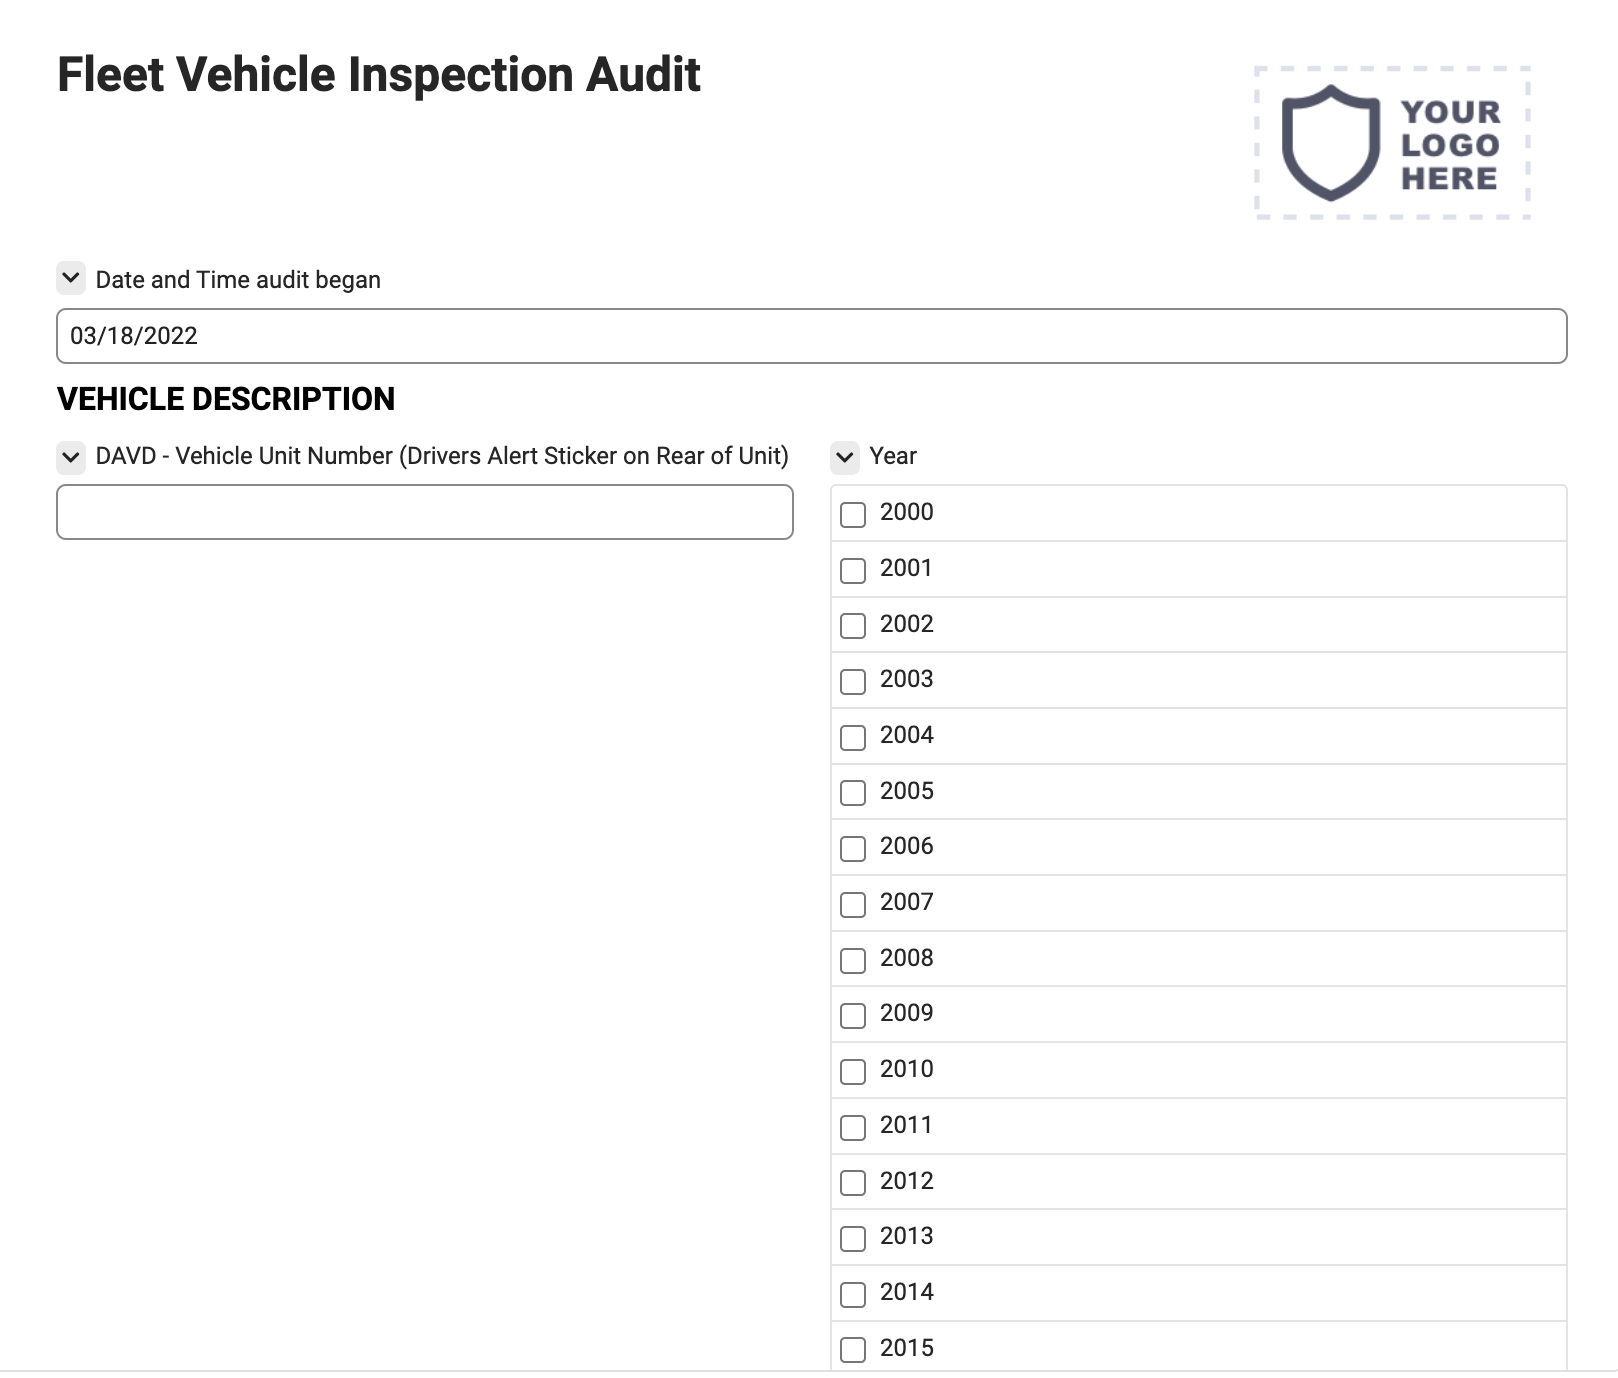 Fleet Vehicle Inspection Audit